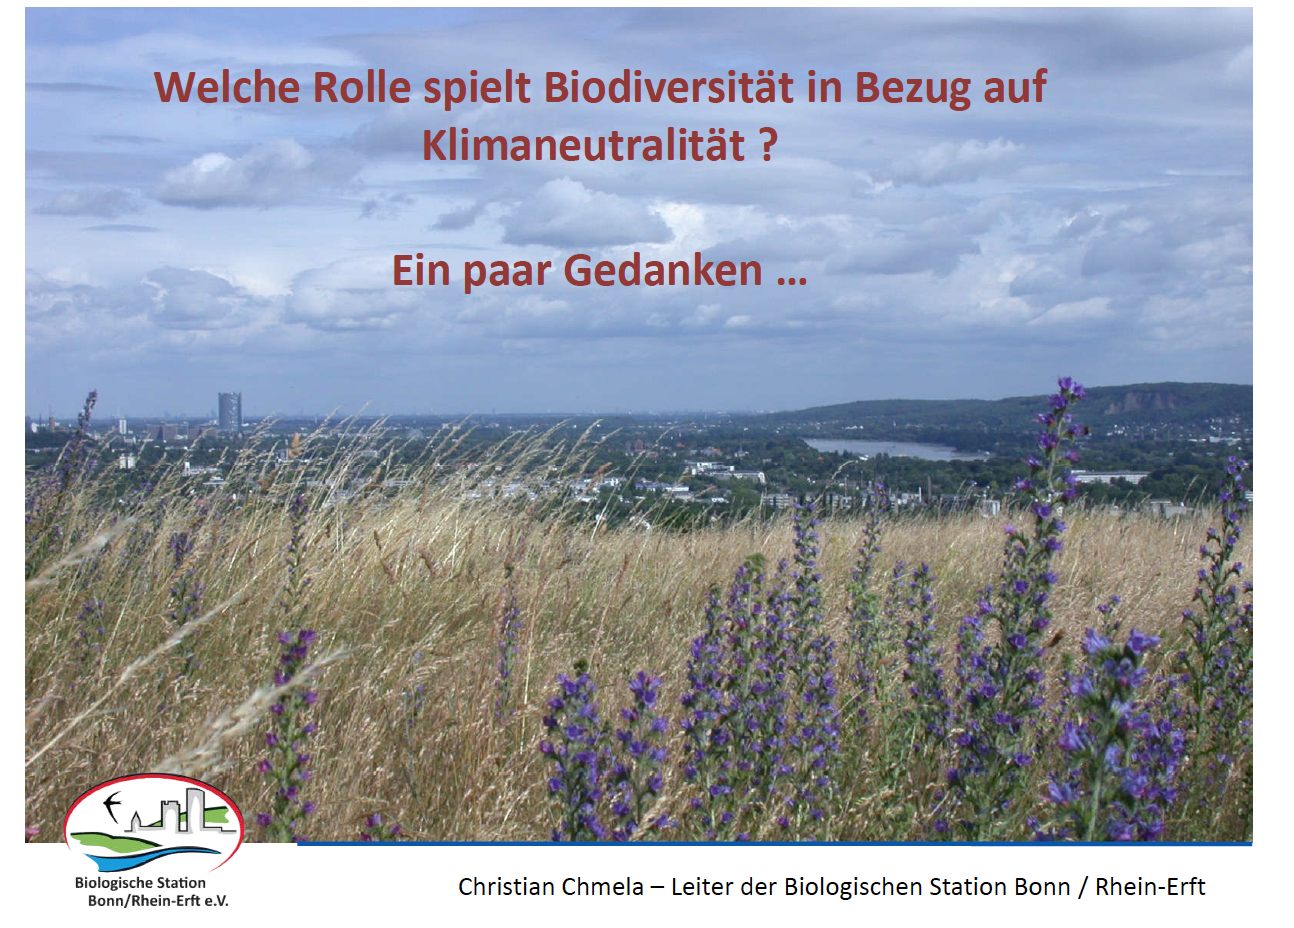 Titelfolie des Vortrags zu Biodiversität und Klimaneutralität